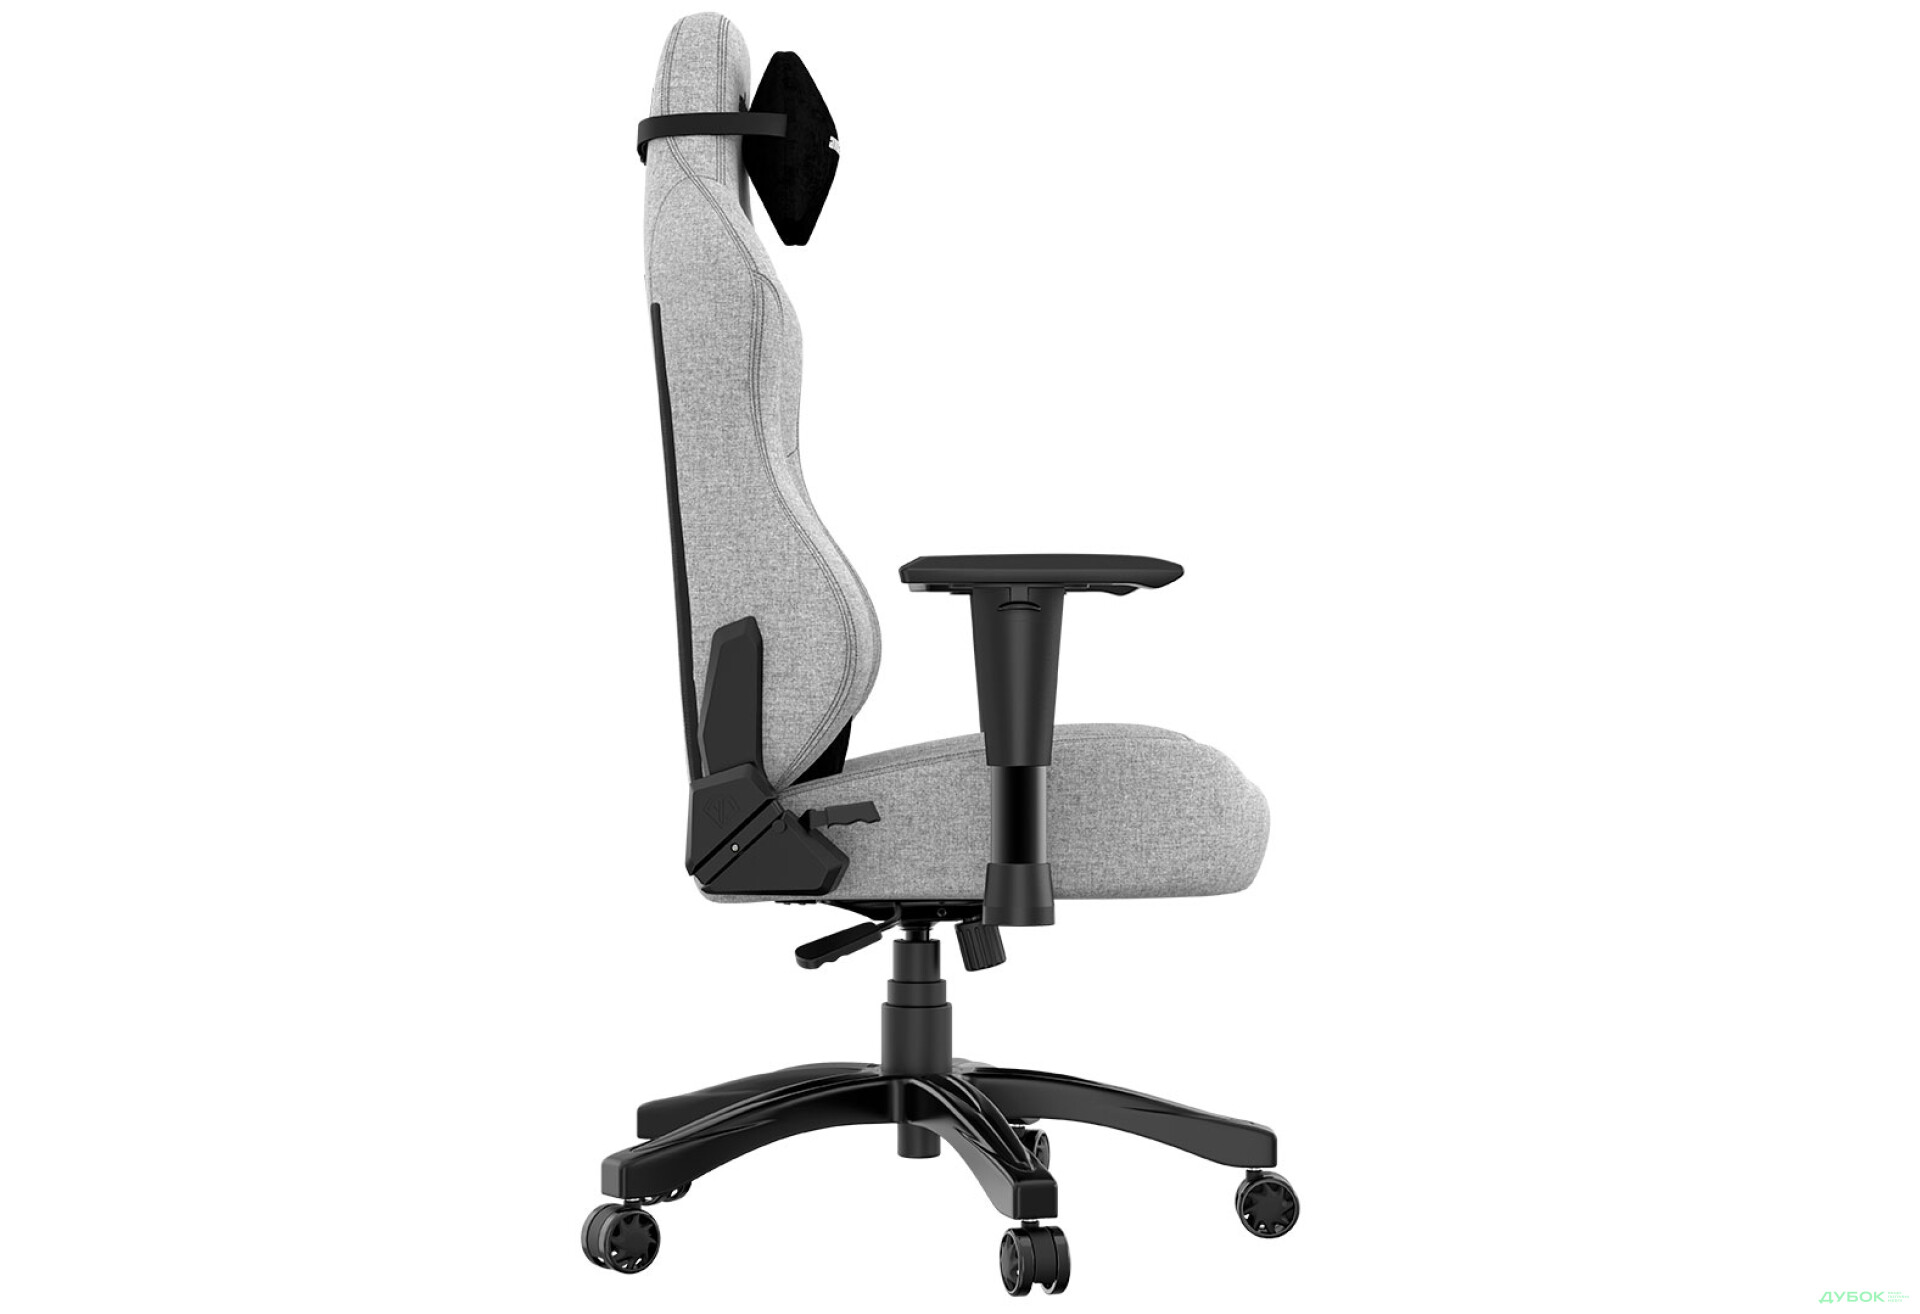 Фото 7 - Компьютерное кресло Anda Seat Phantom 3 70x55x134 см игровое, серое